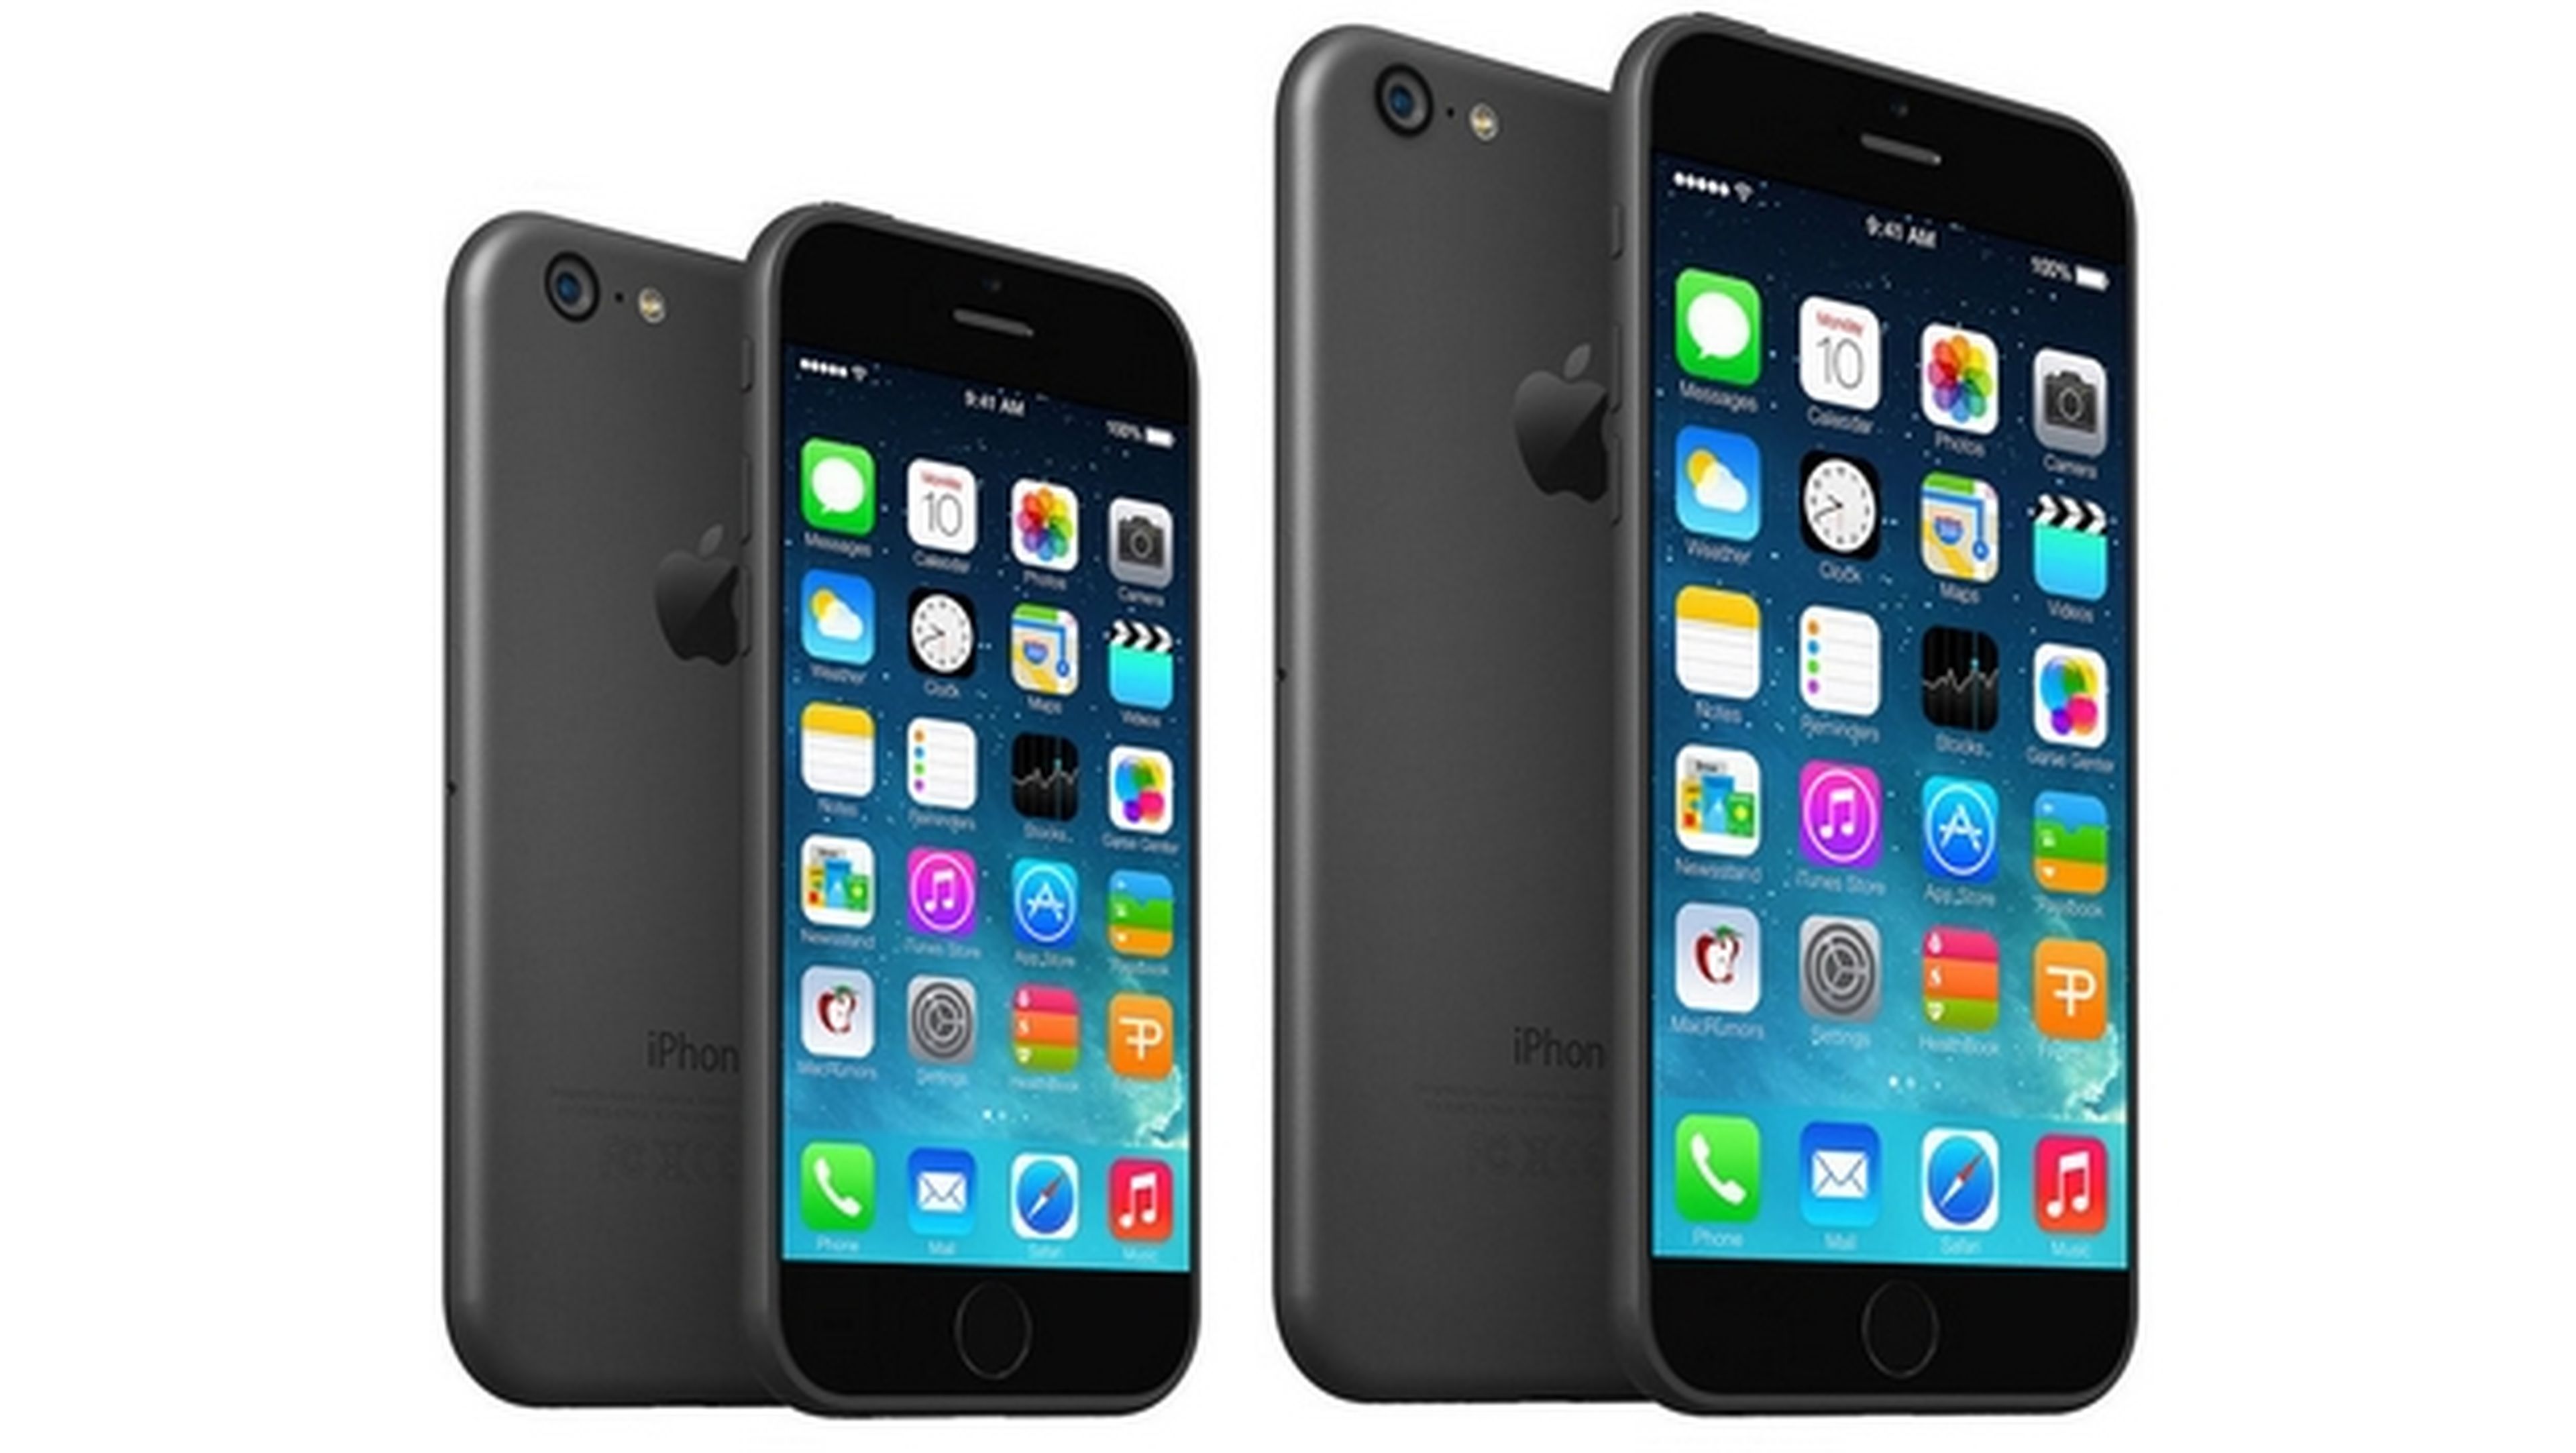 El iPhone 6 de 5.5 pulgadas podría retrasarse por una decisión de marketing, para no competir con el iPhone 5 de 4.7 pulgadas.